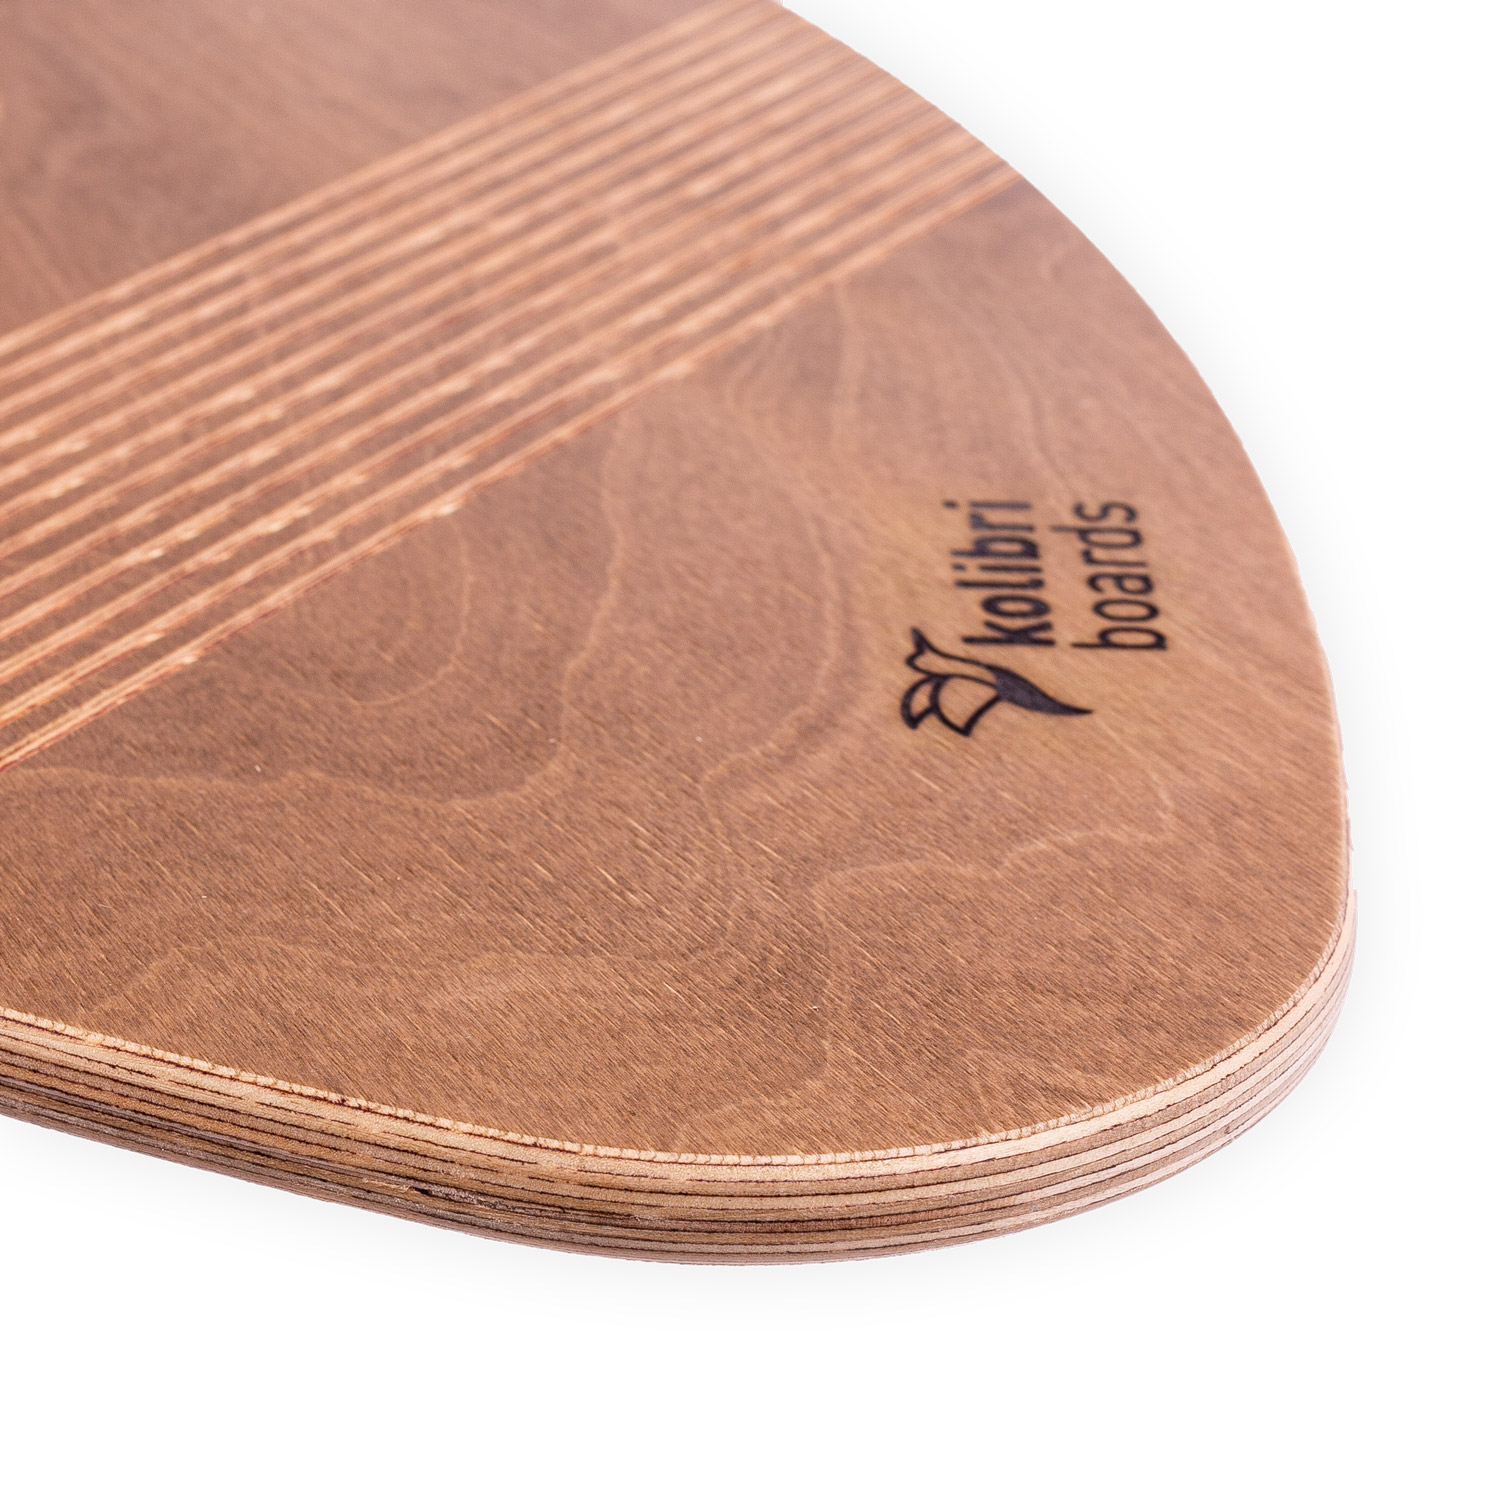 Kolibri Balance Board Grip in Surfboard-Form mit Korkrolle 